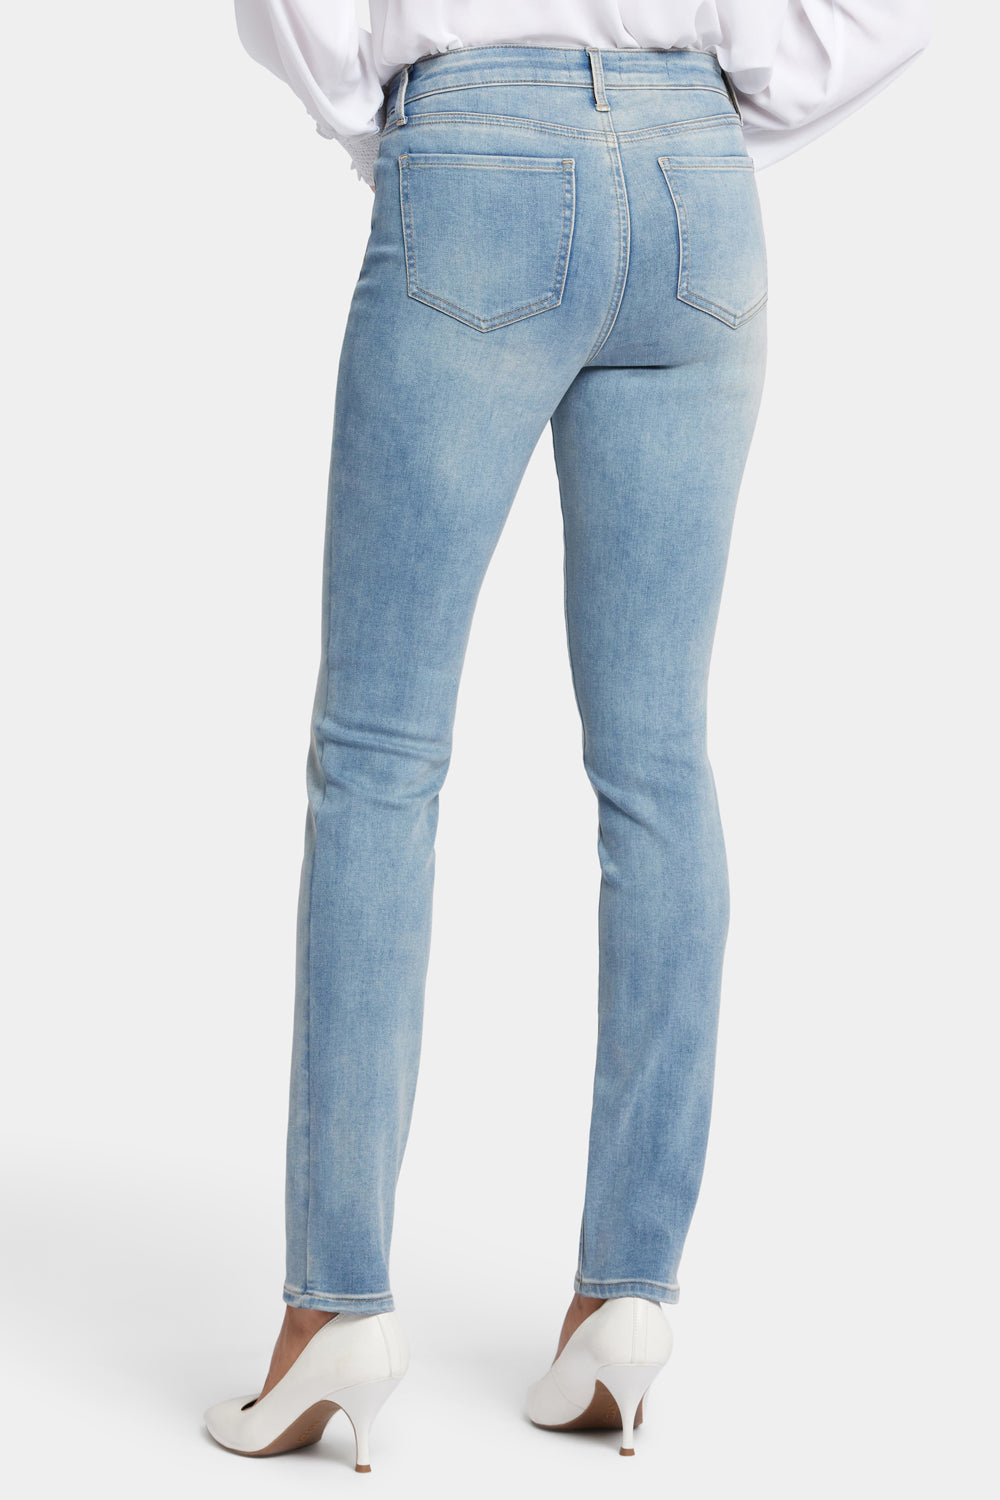 NYDJ Alina Skinny Jeans  - Biscayne